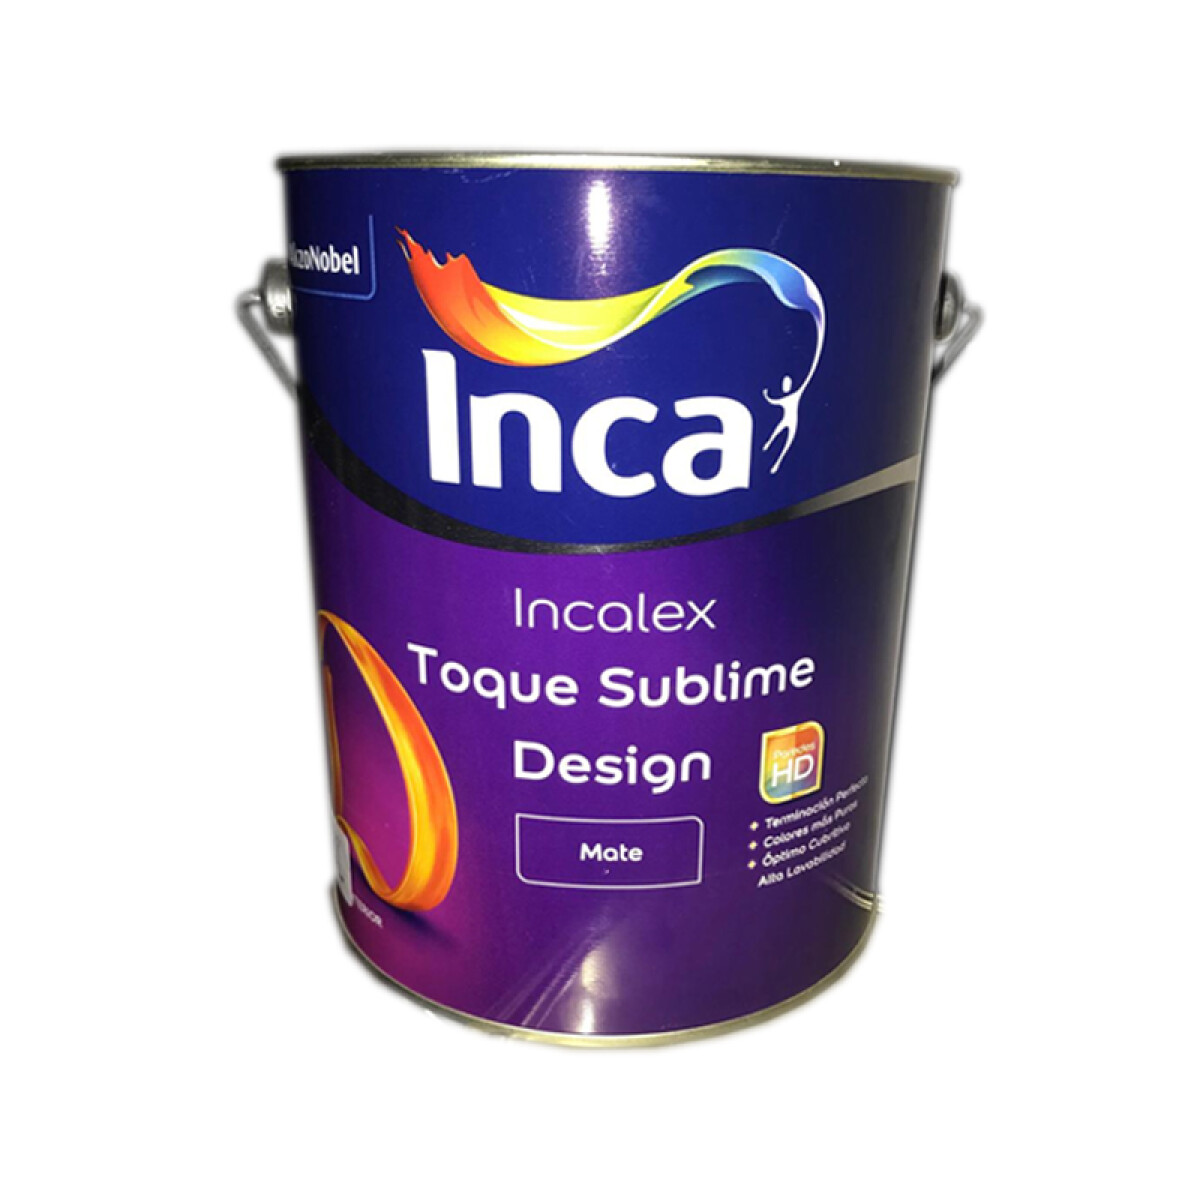 INCALEX TOQUE SUBLIME DESING MATE 20L INCA 